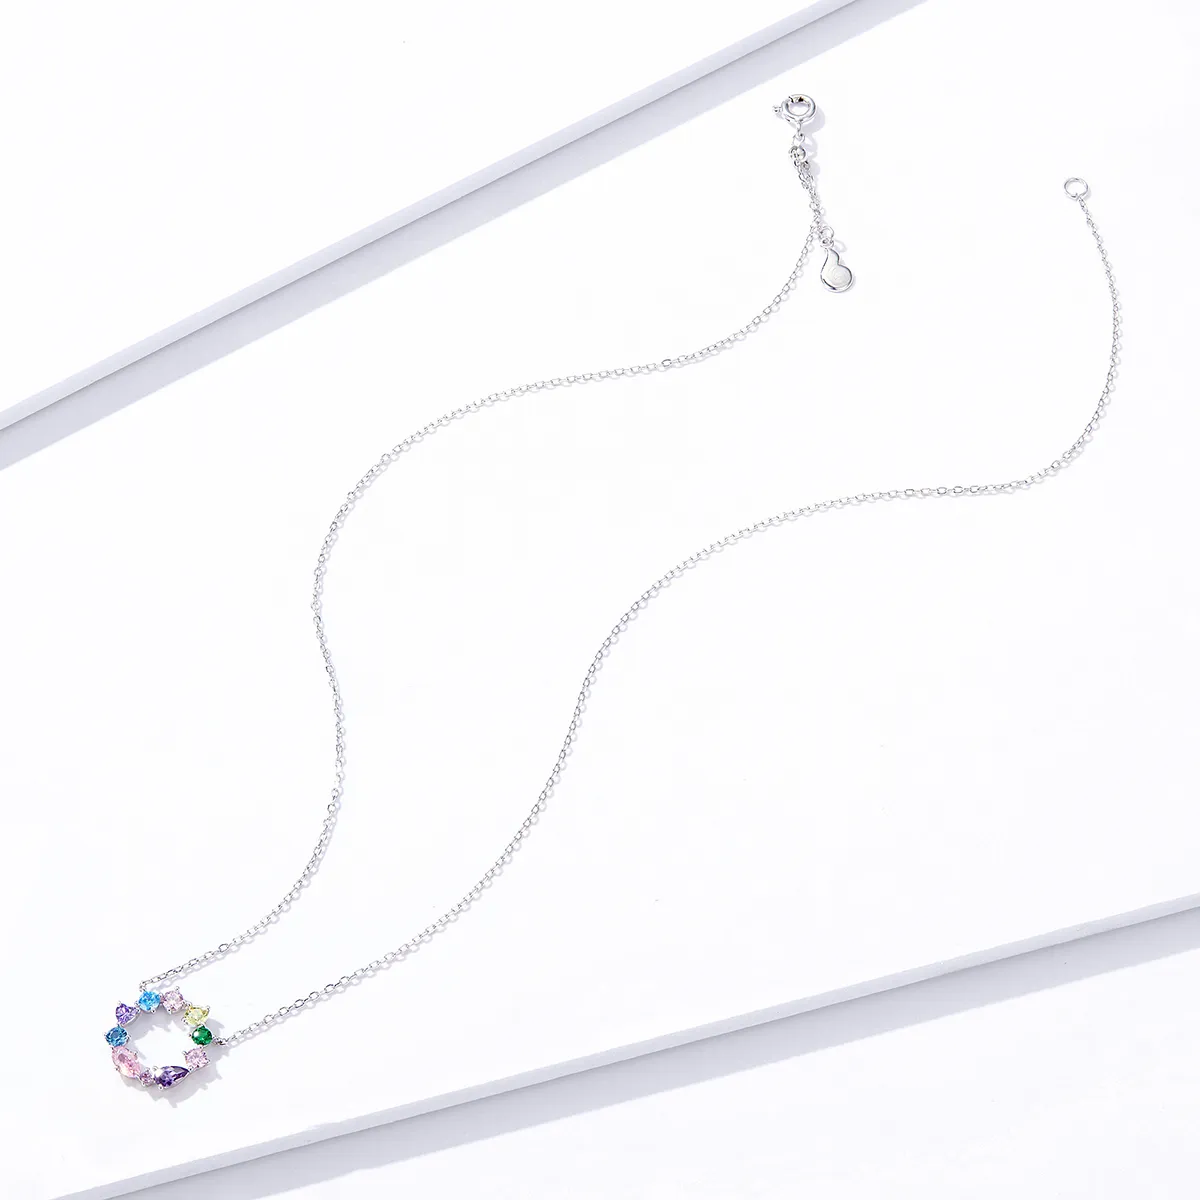 Pandora Style Silver Lucky Wreath Pendant Necklace - BSN178